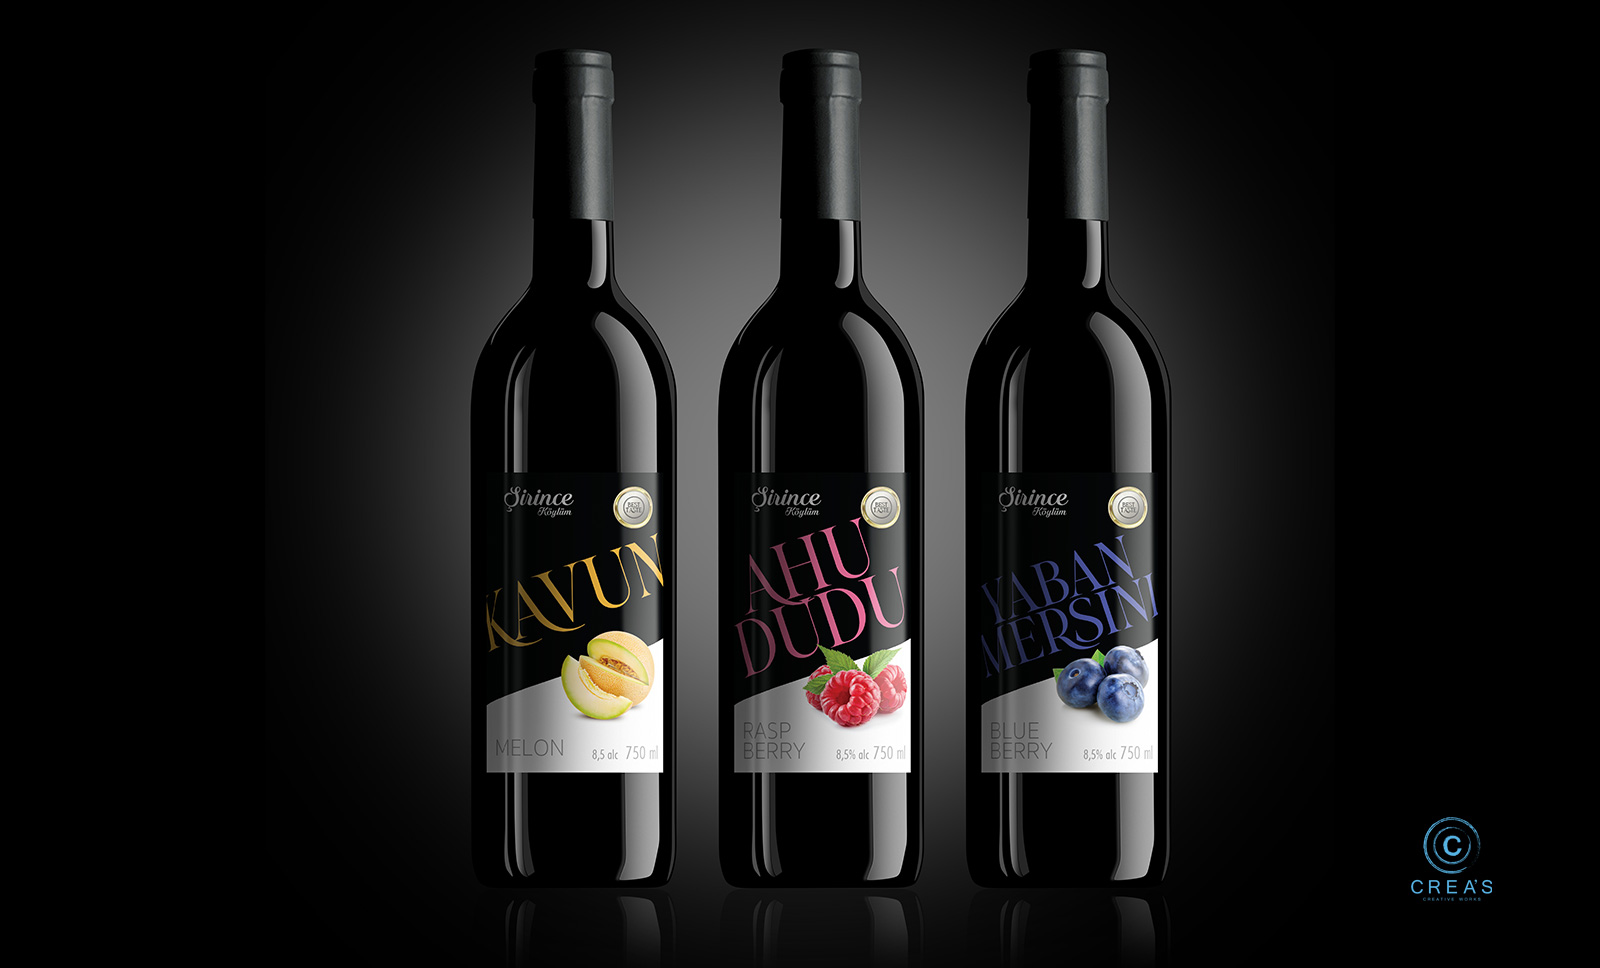 Creas Creative Tasarım ve Reklam Ajansı İzmir - şarap etiket tasarımı